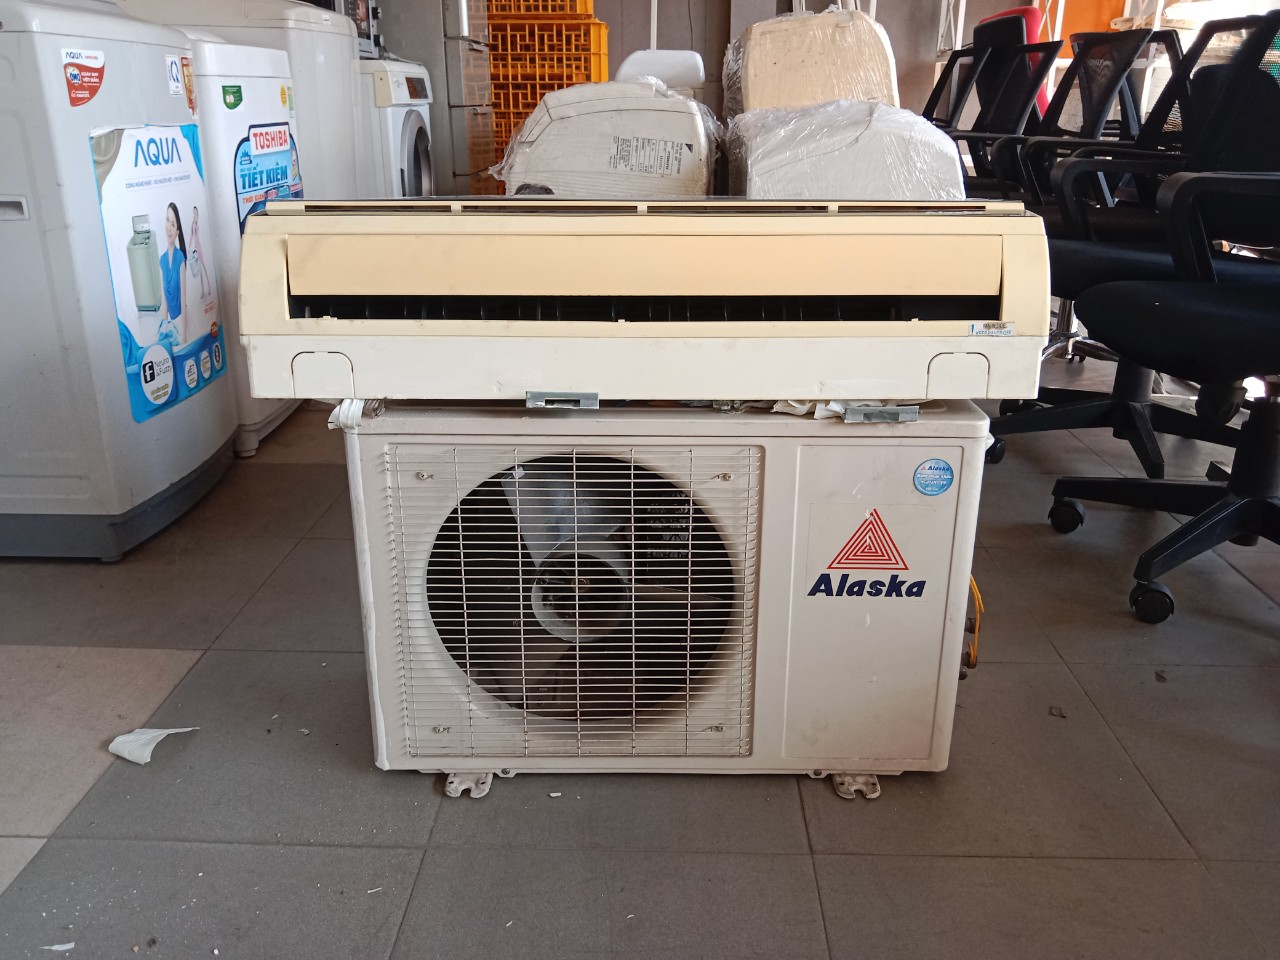 Máy lạnh Alaska 1.0HP AC-9WE4 cũ SP018061.4